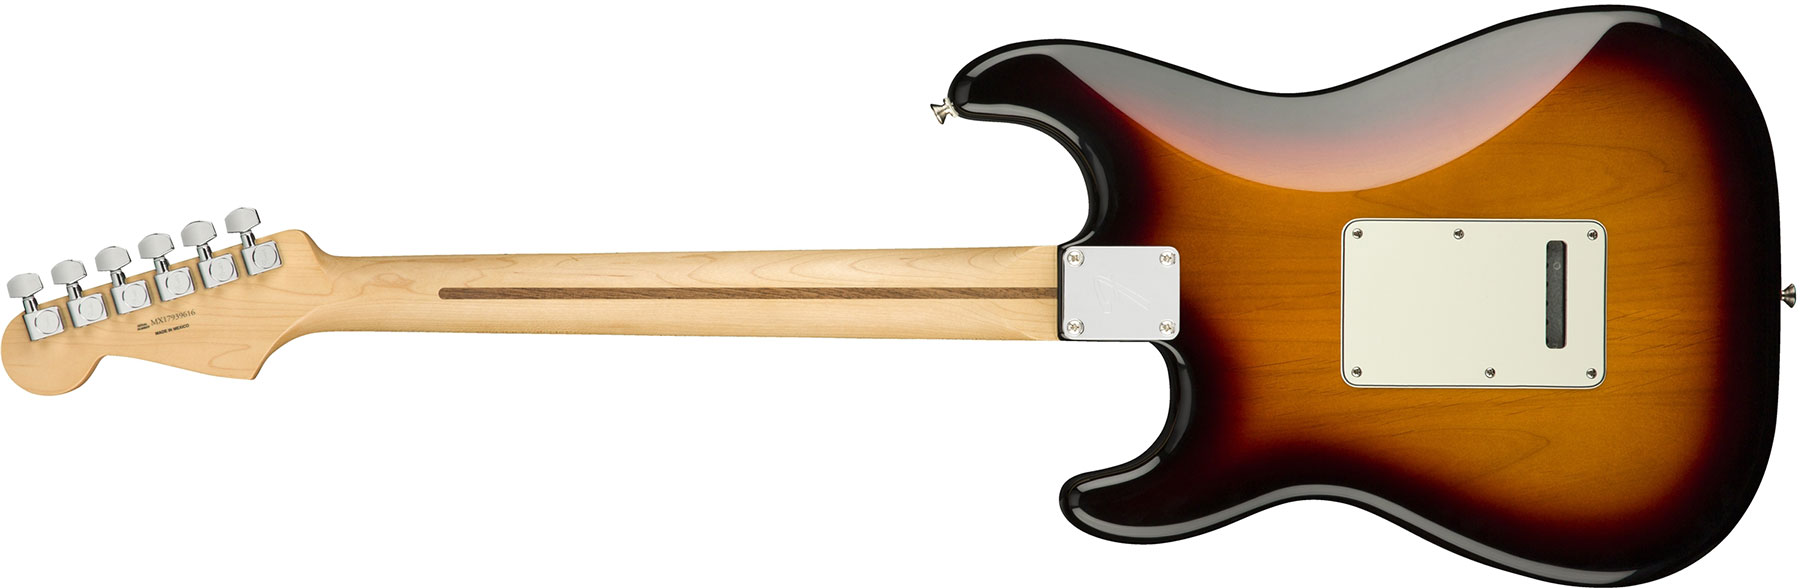 Fender Strat Player Mex Hss Mn - 3-color Sunburst - Elektrische gitaar in Str-vorm - Variation 1